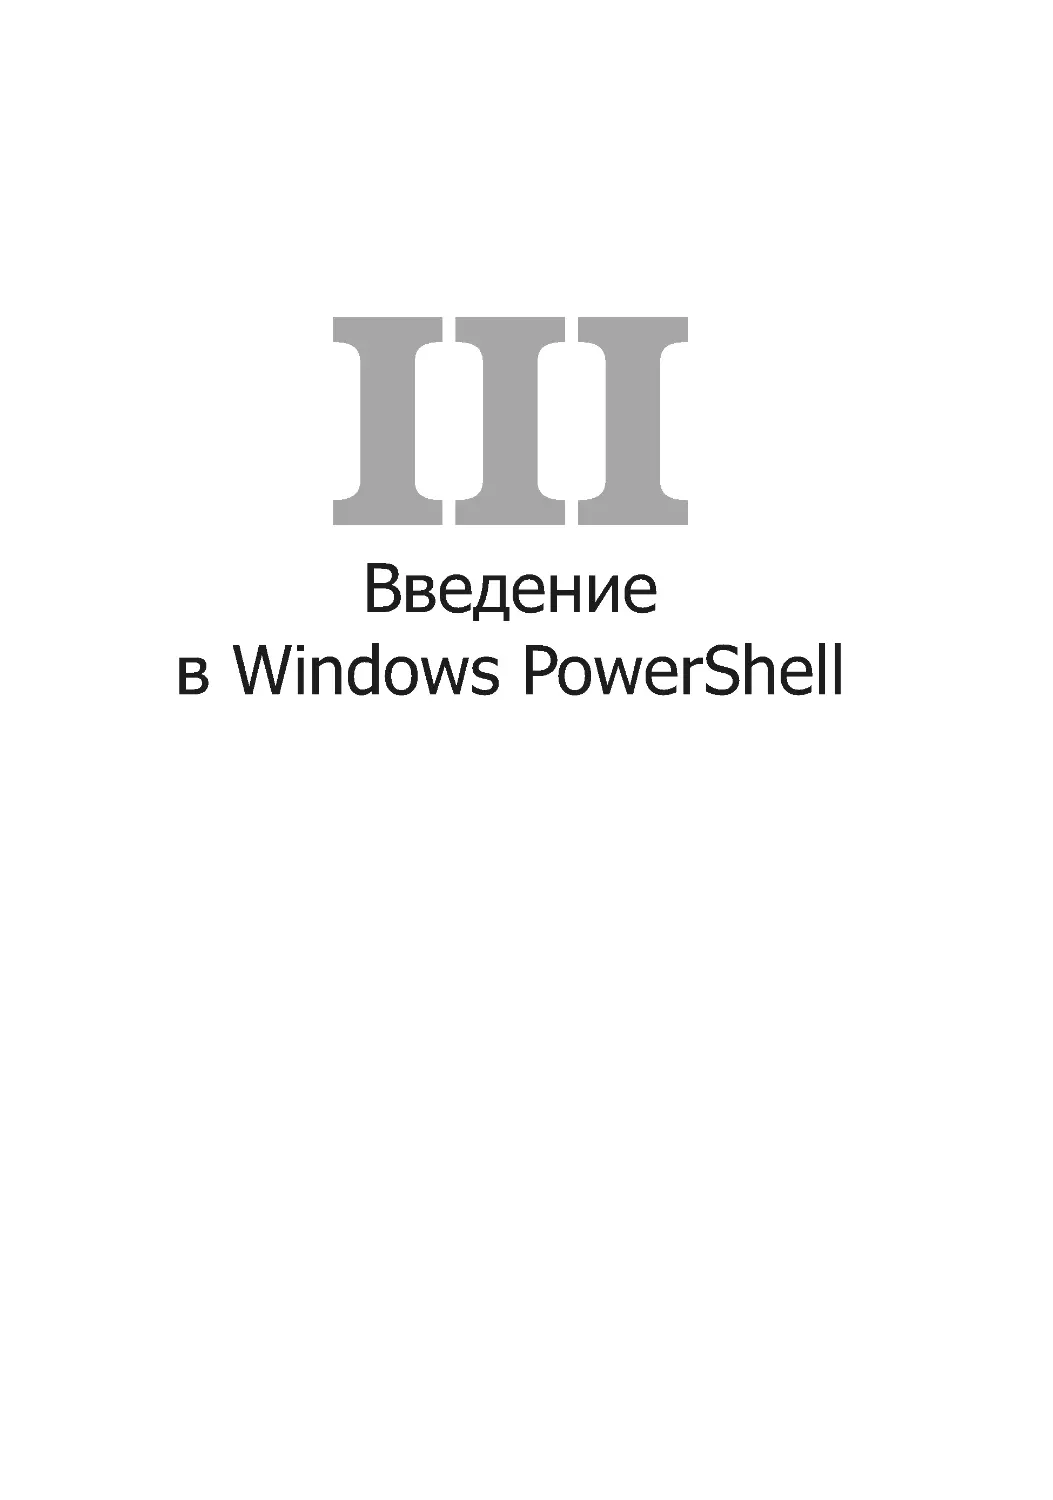 Введение 
в Windows PowerShell